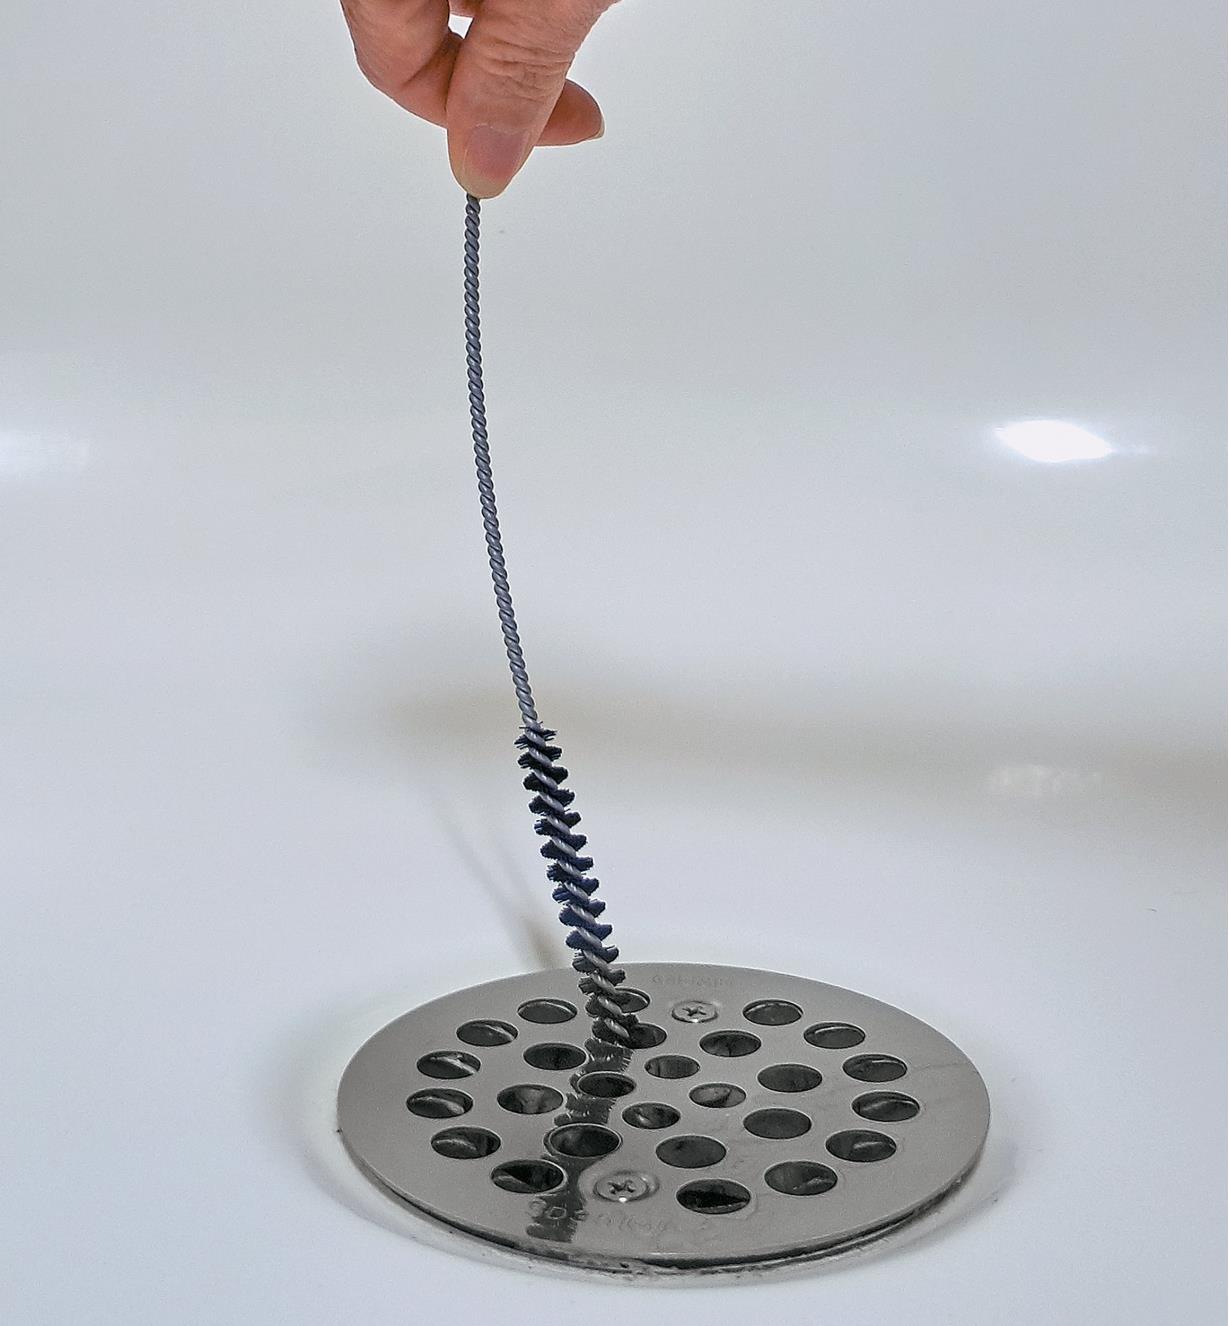 Personne insérant une brosse pour nettoyer les drains dans le drain d'une douche